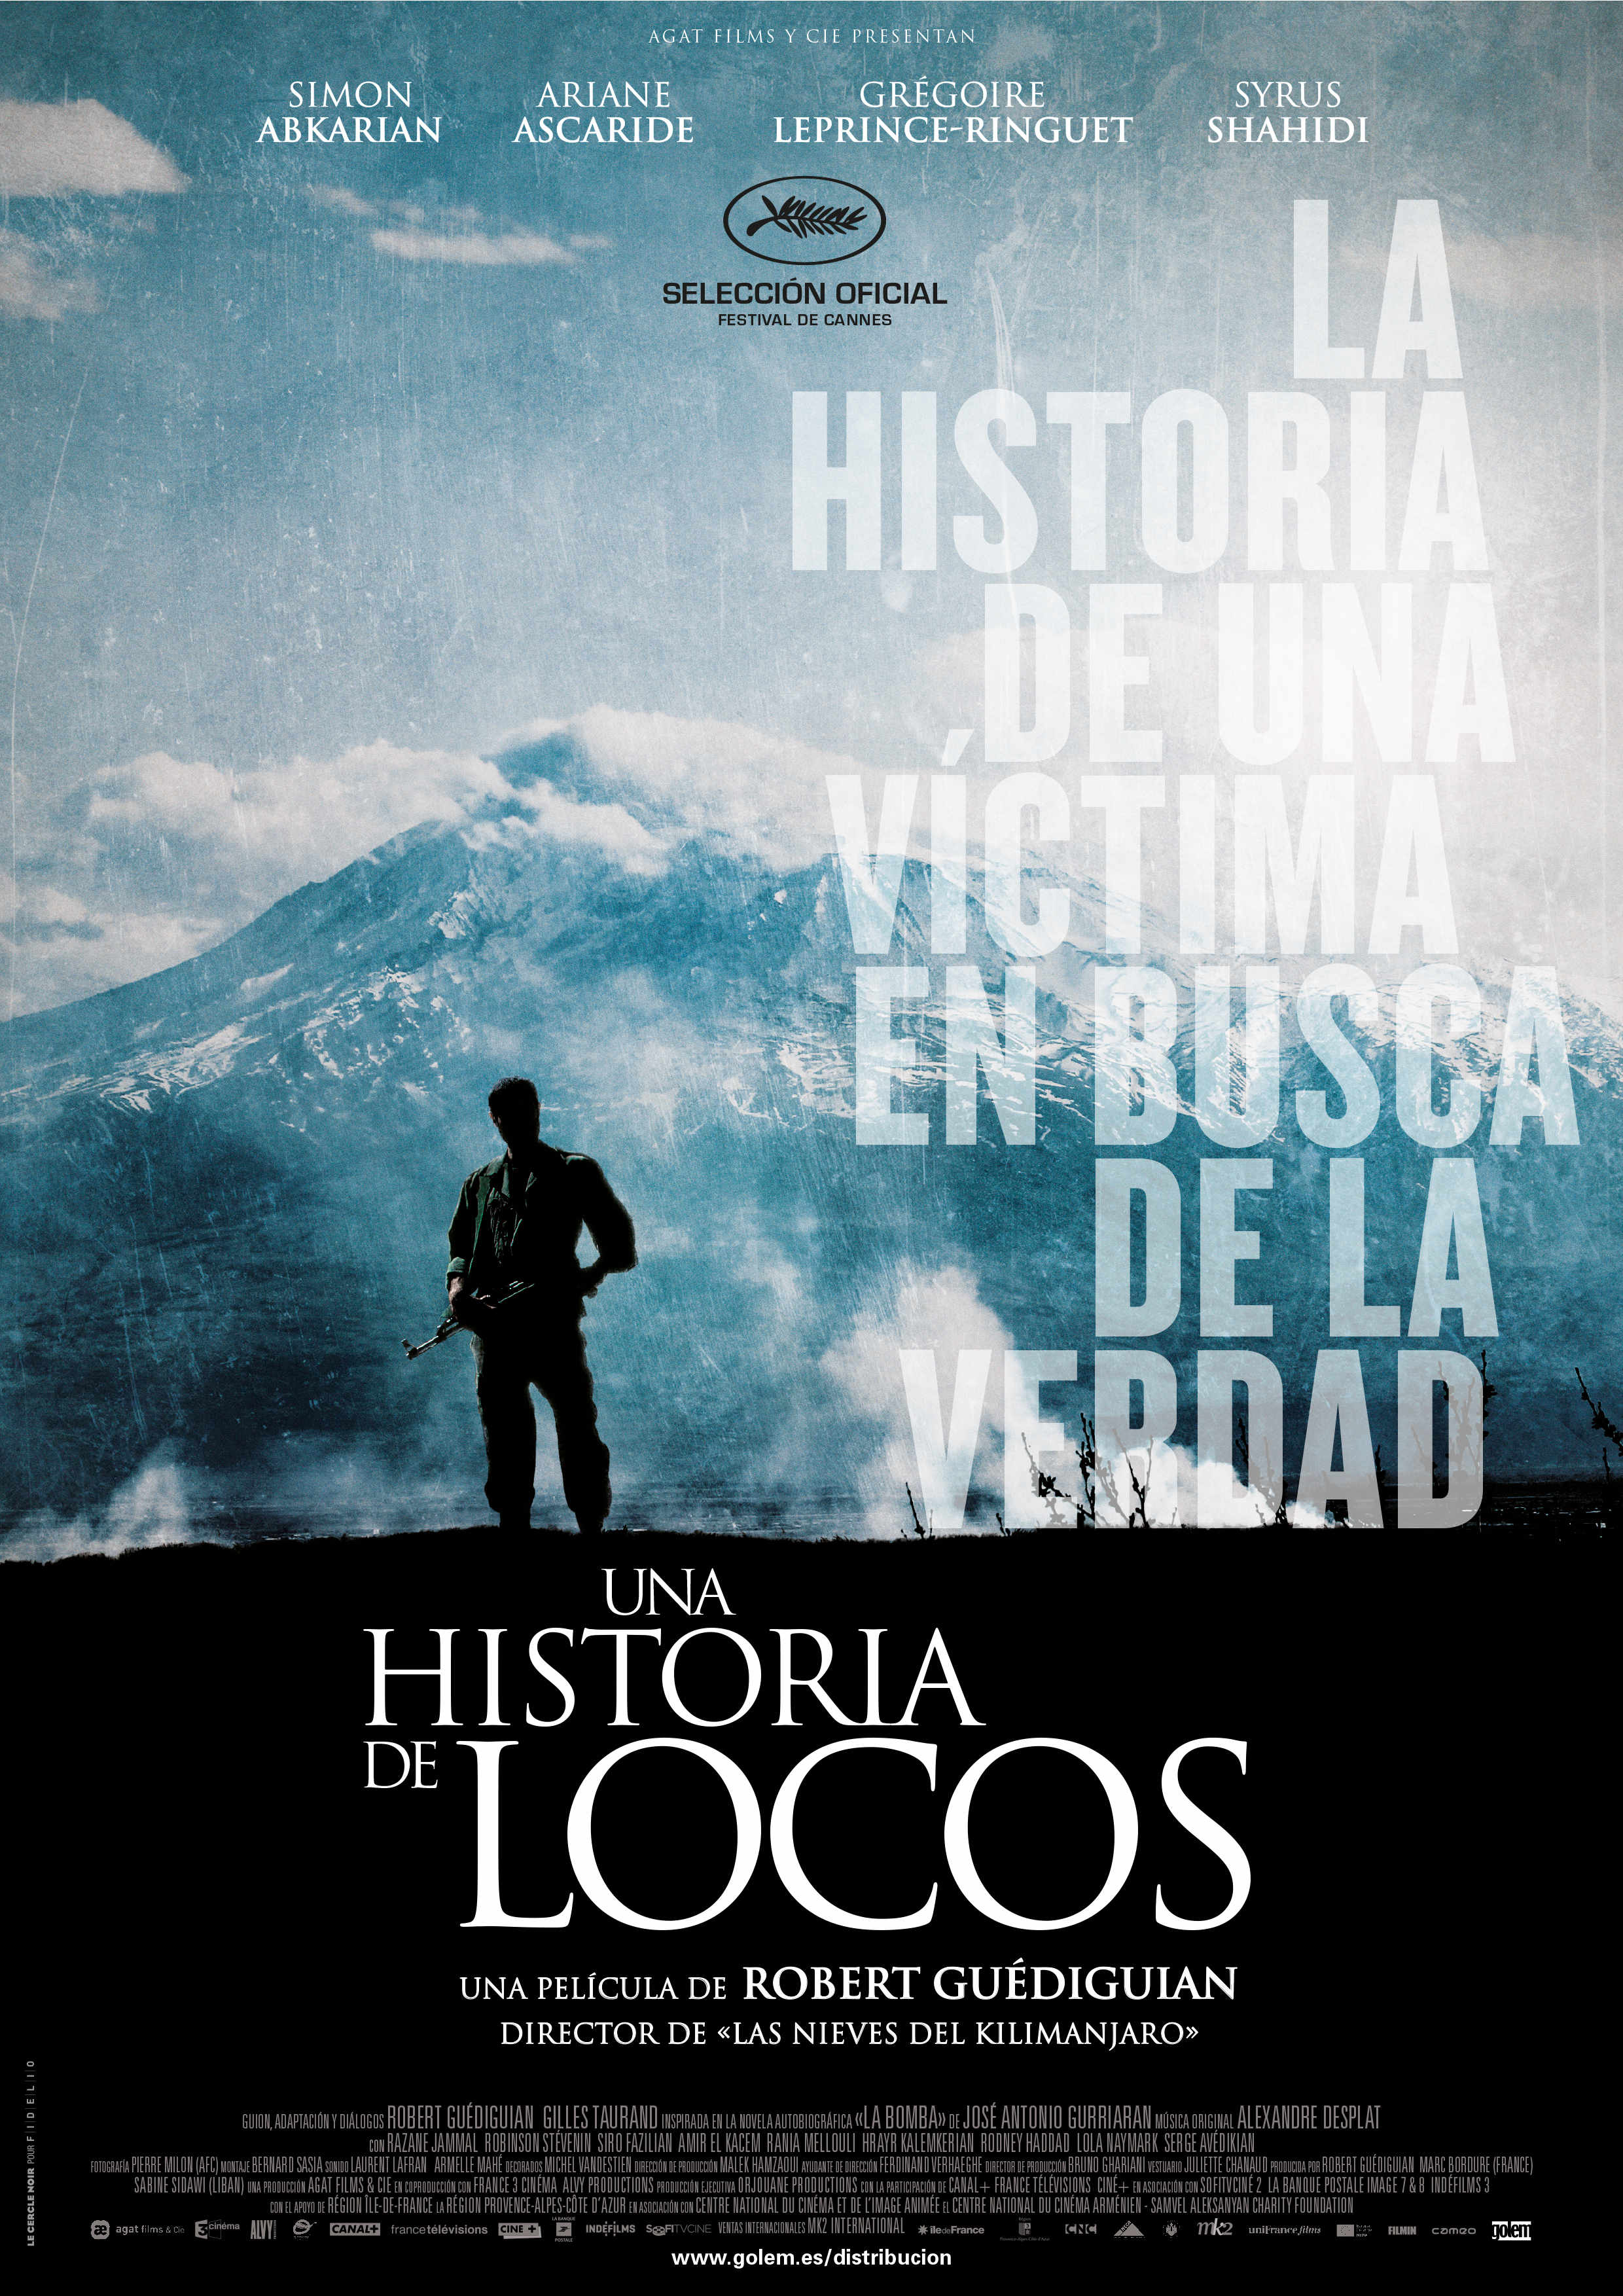 UNA HISTORIA DE LOCOS